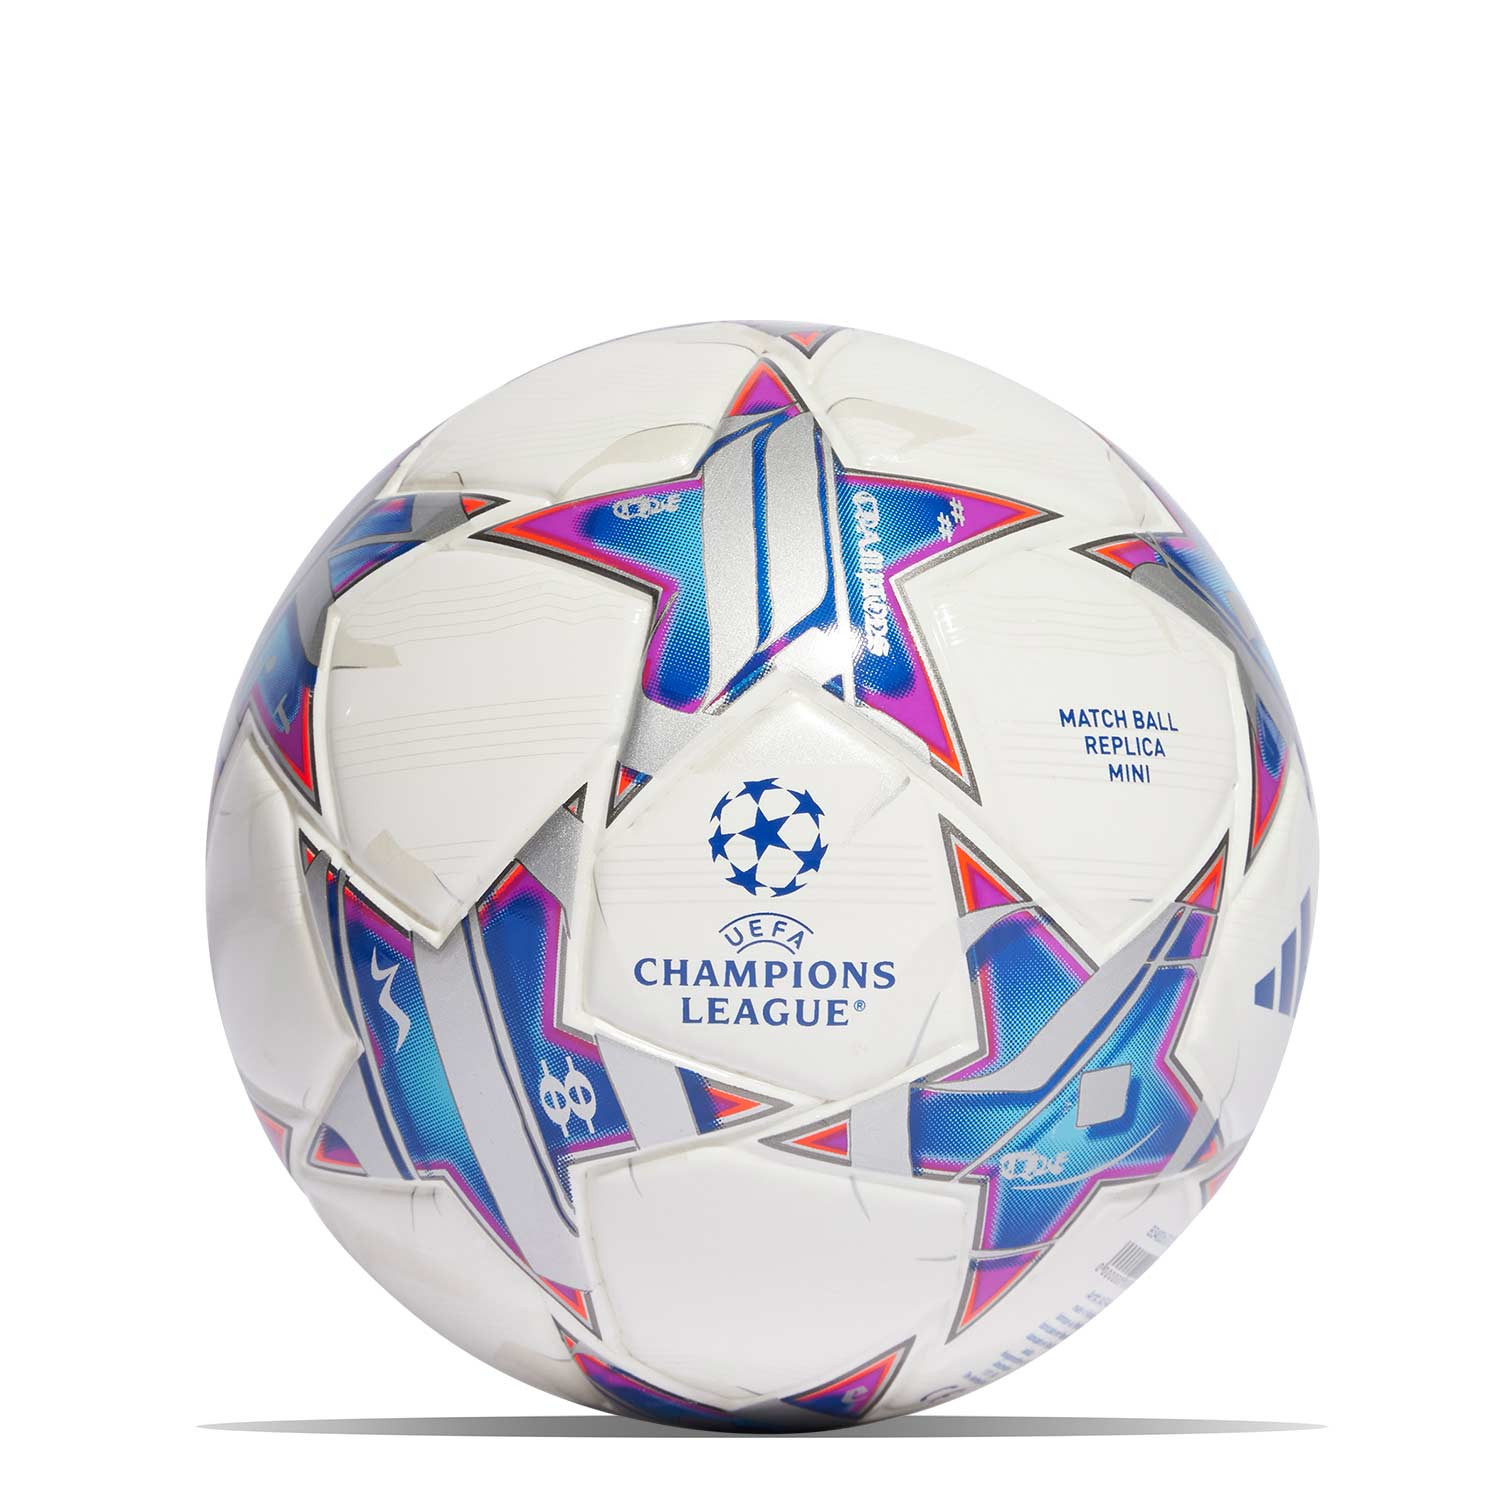 Balón adidas Champions League 23-24 Tmini blanco azul